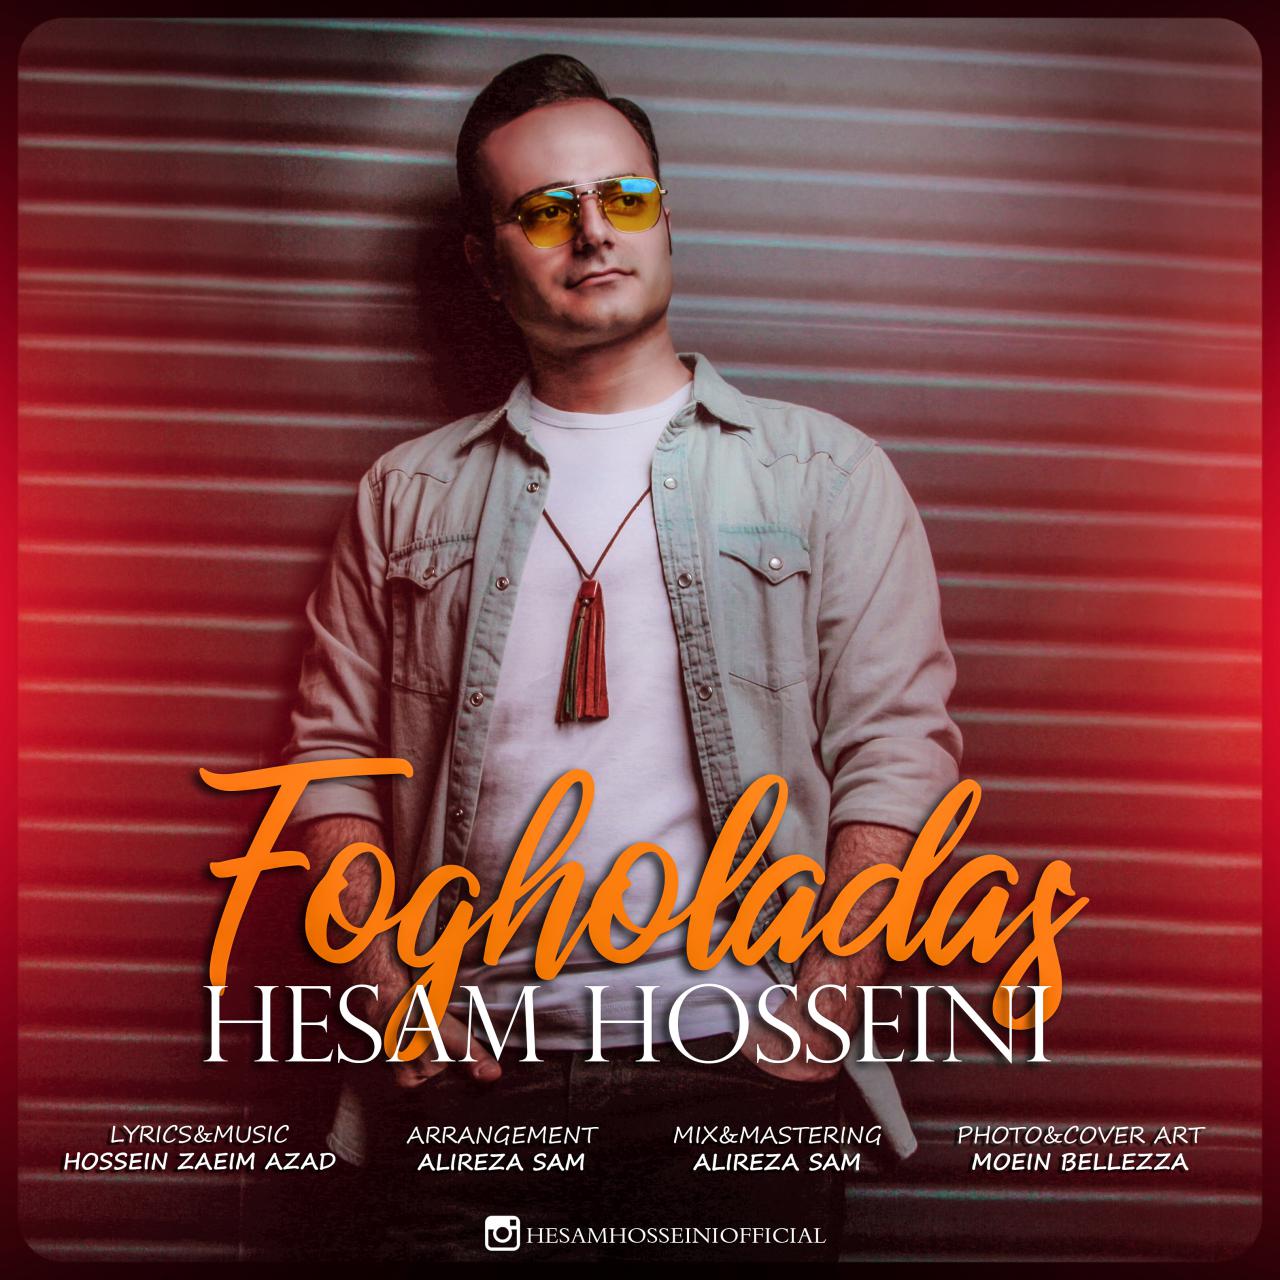 Hesam Hossini – Fogholadas